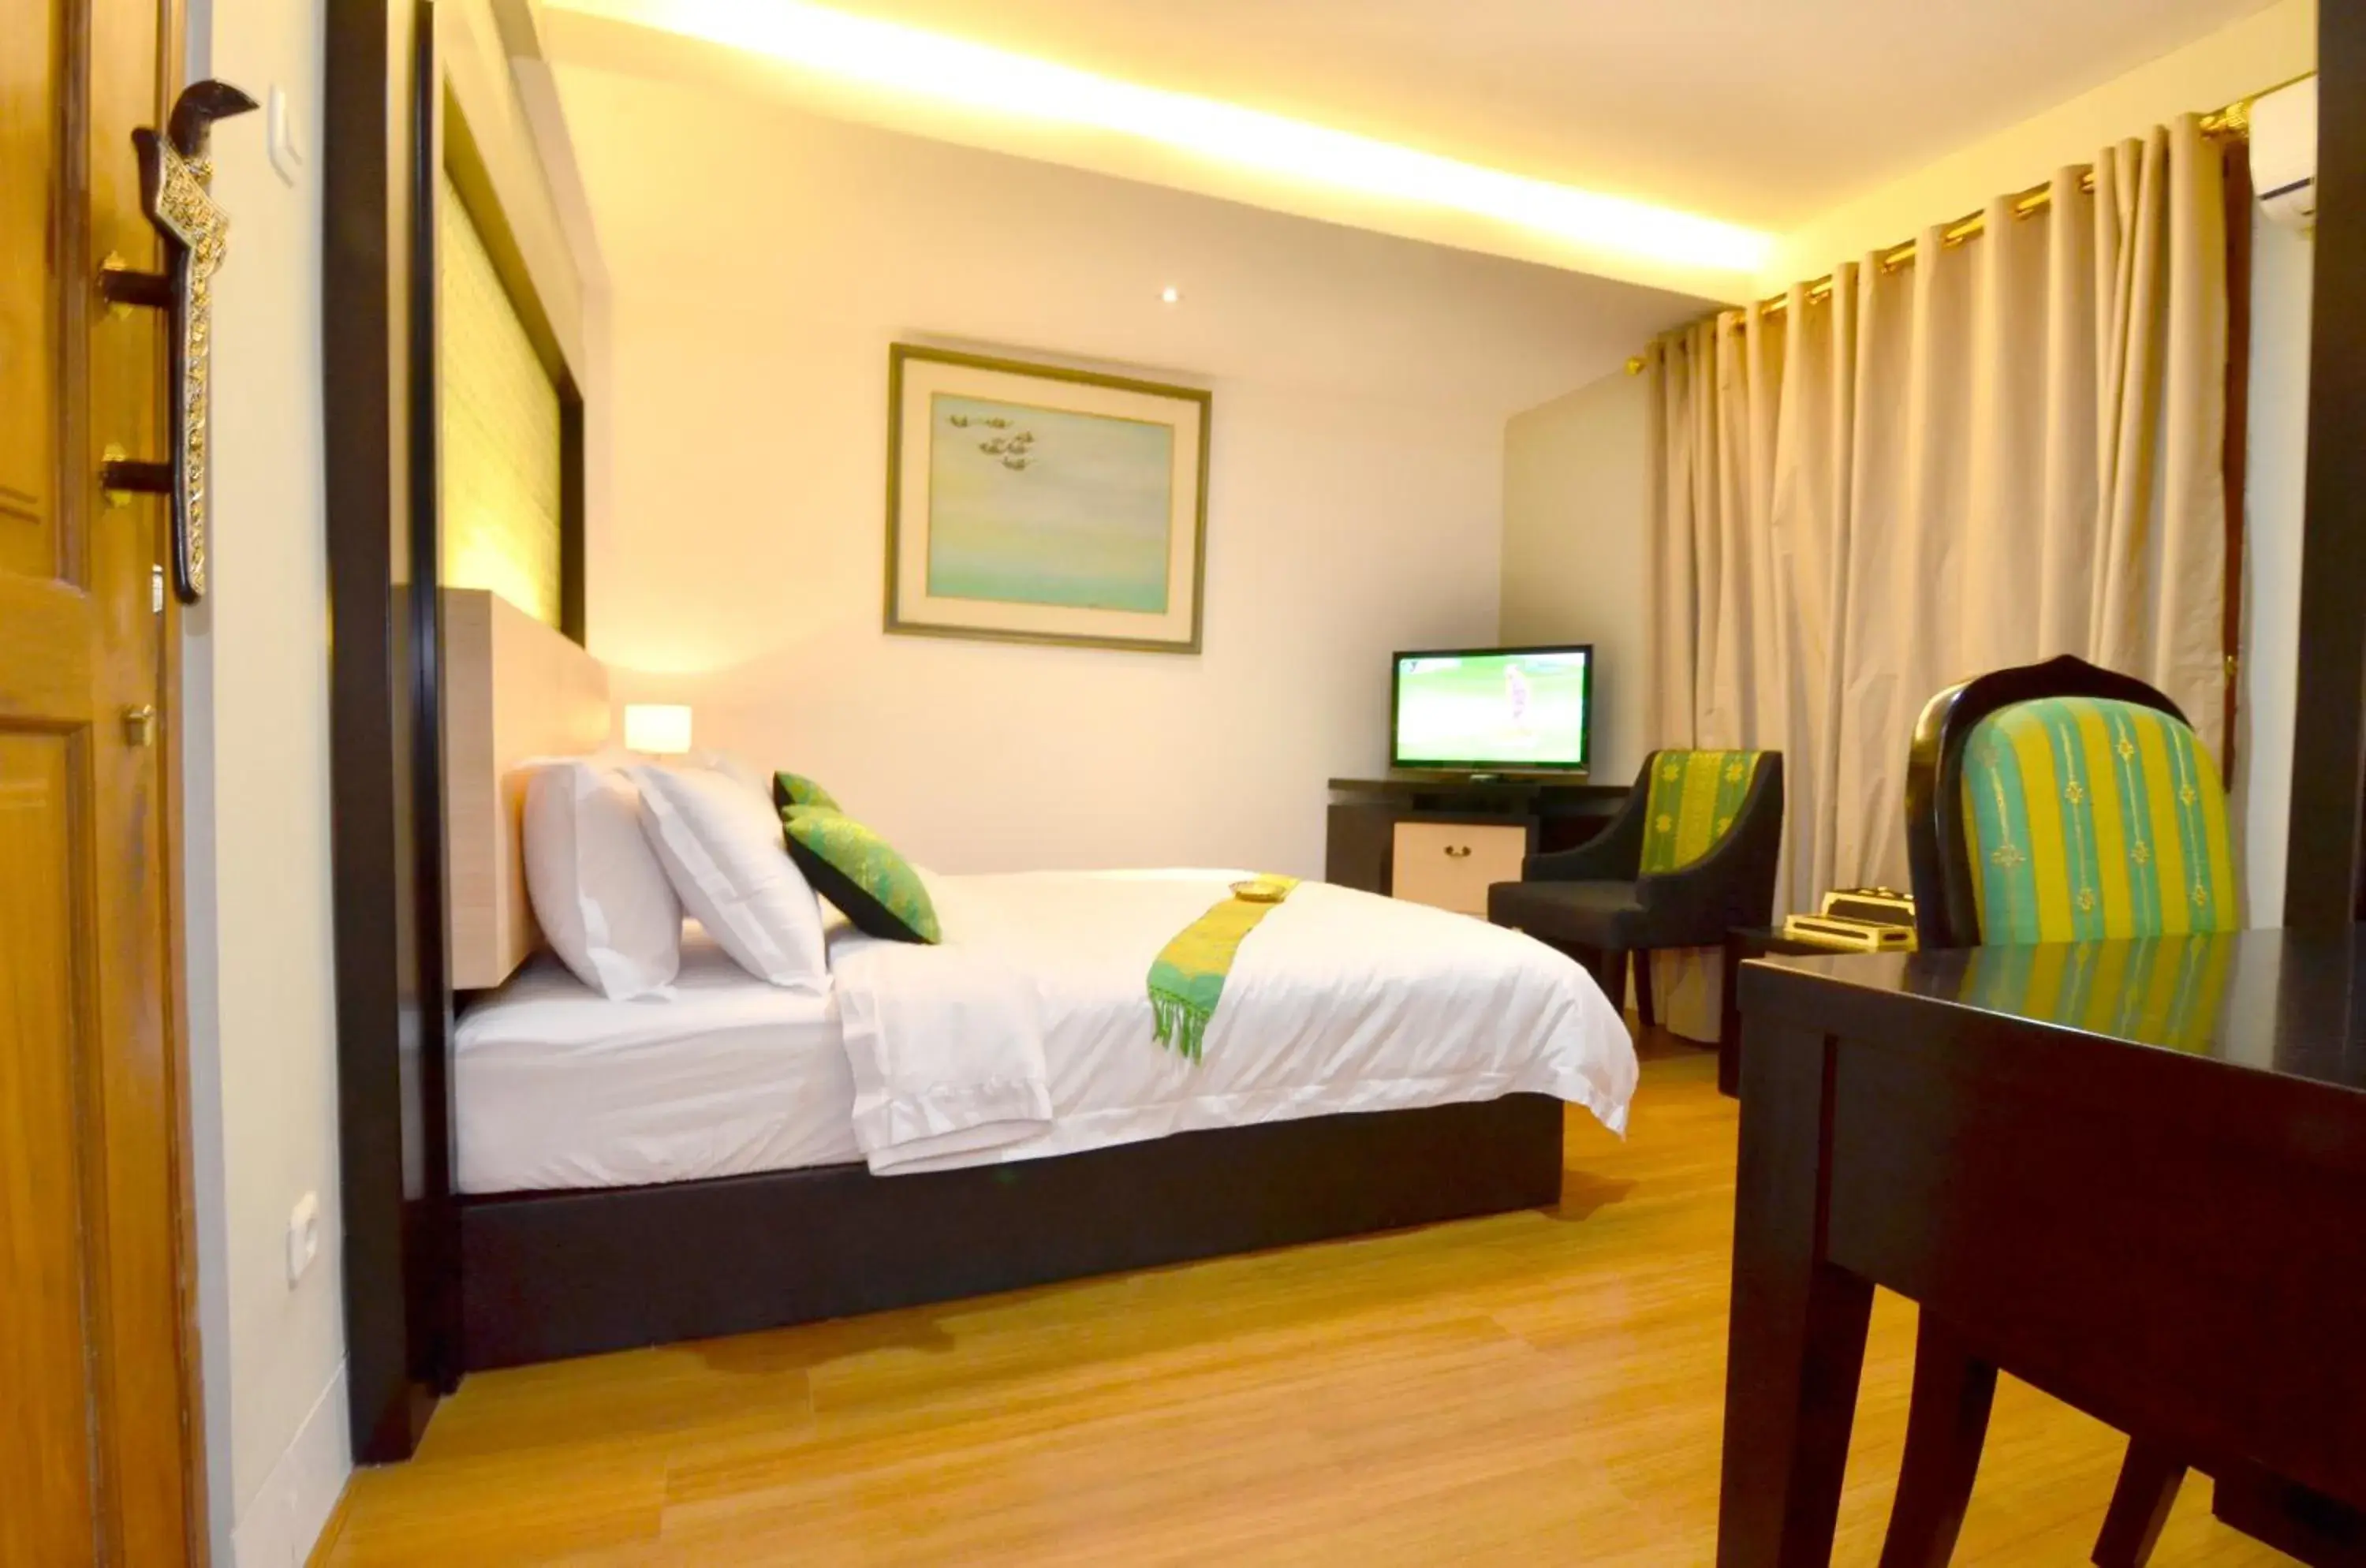 Bedroom, Bed in Balai Melayu Hotel